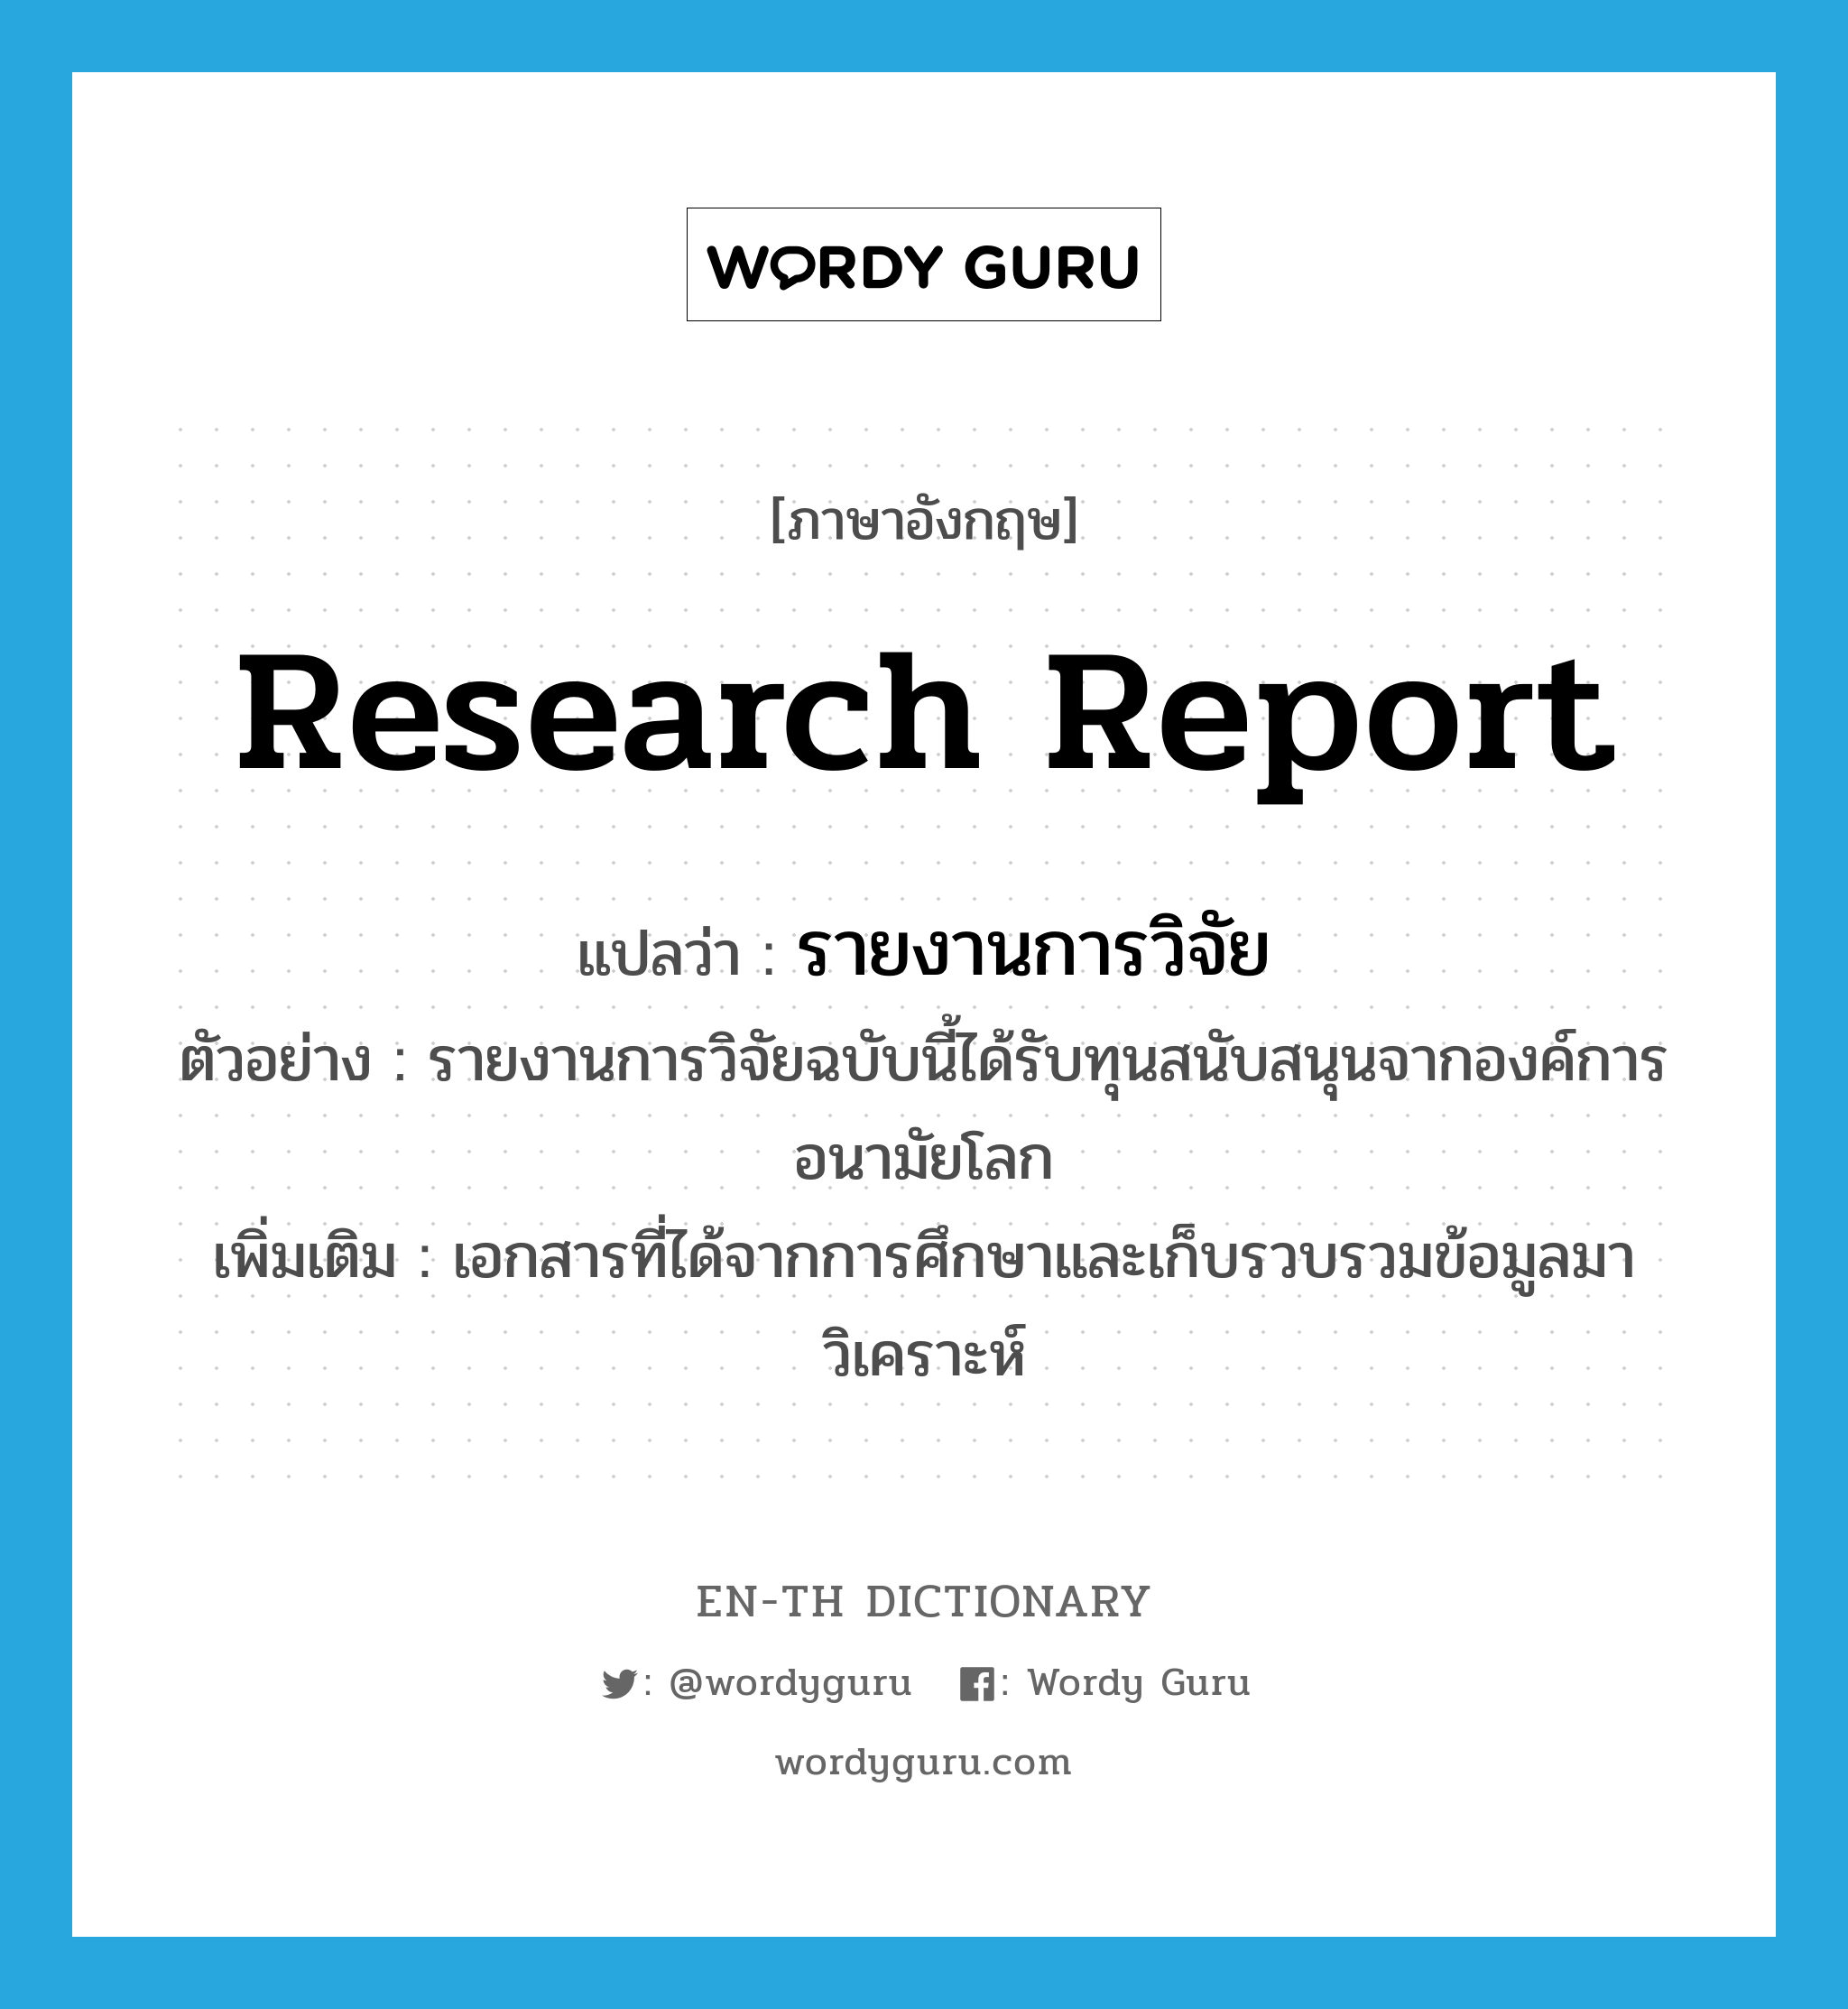 research report แปลว่า?, คำศัพท์ภาษาอังกฤษ research report แปลว่า รายงานการวิจัย ประเภท N ตัวอย่าง รายงานการวิจัยฉบับนี้ได้รับทุนสนับสนุนจากองค์การอนามัยโลก เพิ่มเติม เอกสารที่ได้จากการศึกษาและเก็บรวบรวมข้อมูลมาวิเคราะห์ หมวด N